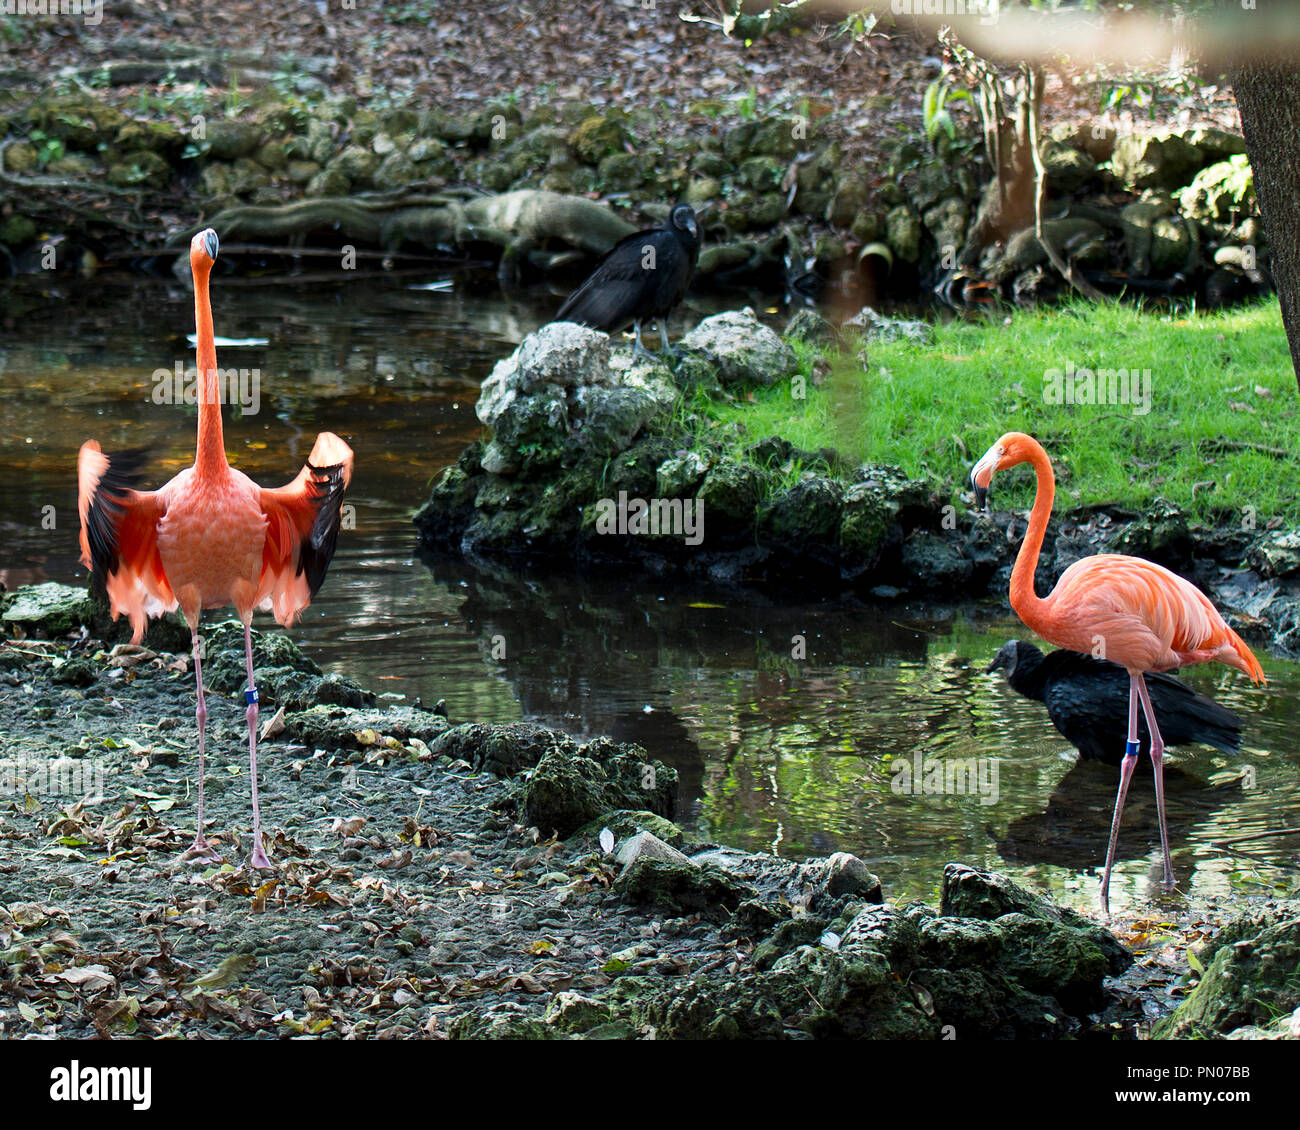 Flamingo Vögel in ihre Umgebung und eines mit Flügel ausbreiten. Stockfoto